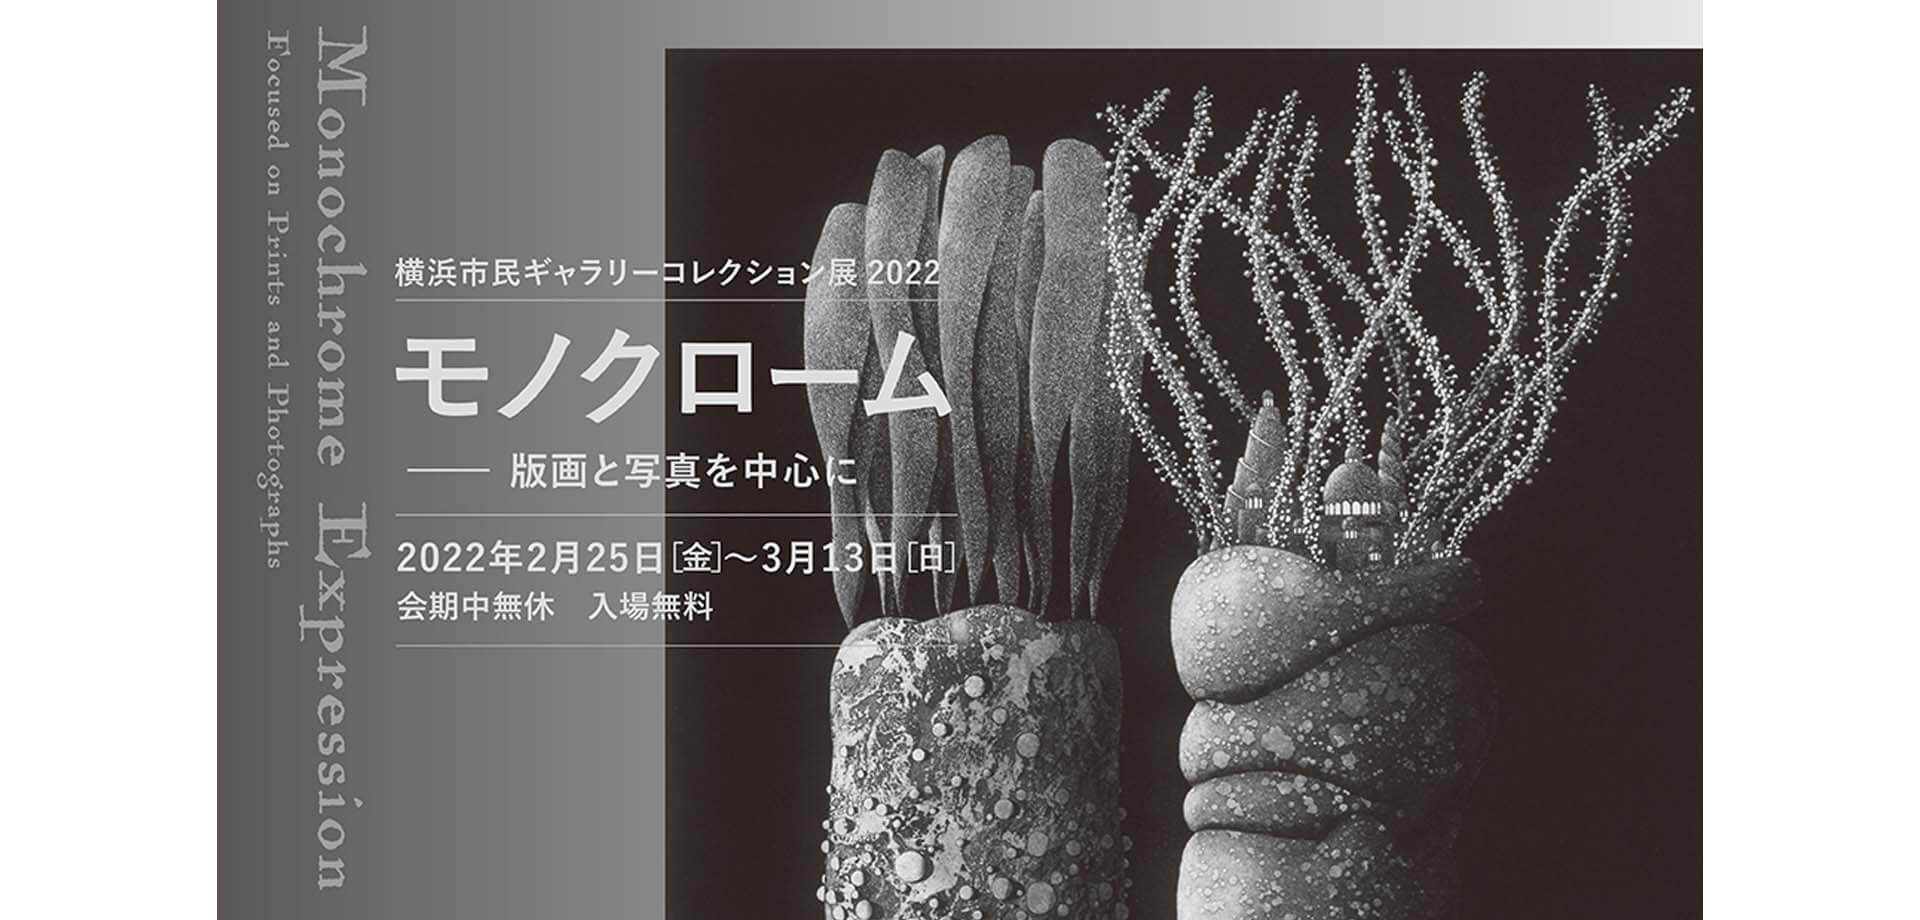 【横浜市民ギャラリー】「コレクション展2022 モノクローム ―版画と写真を中心に」